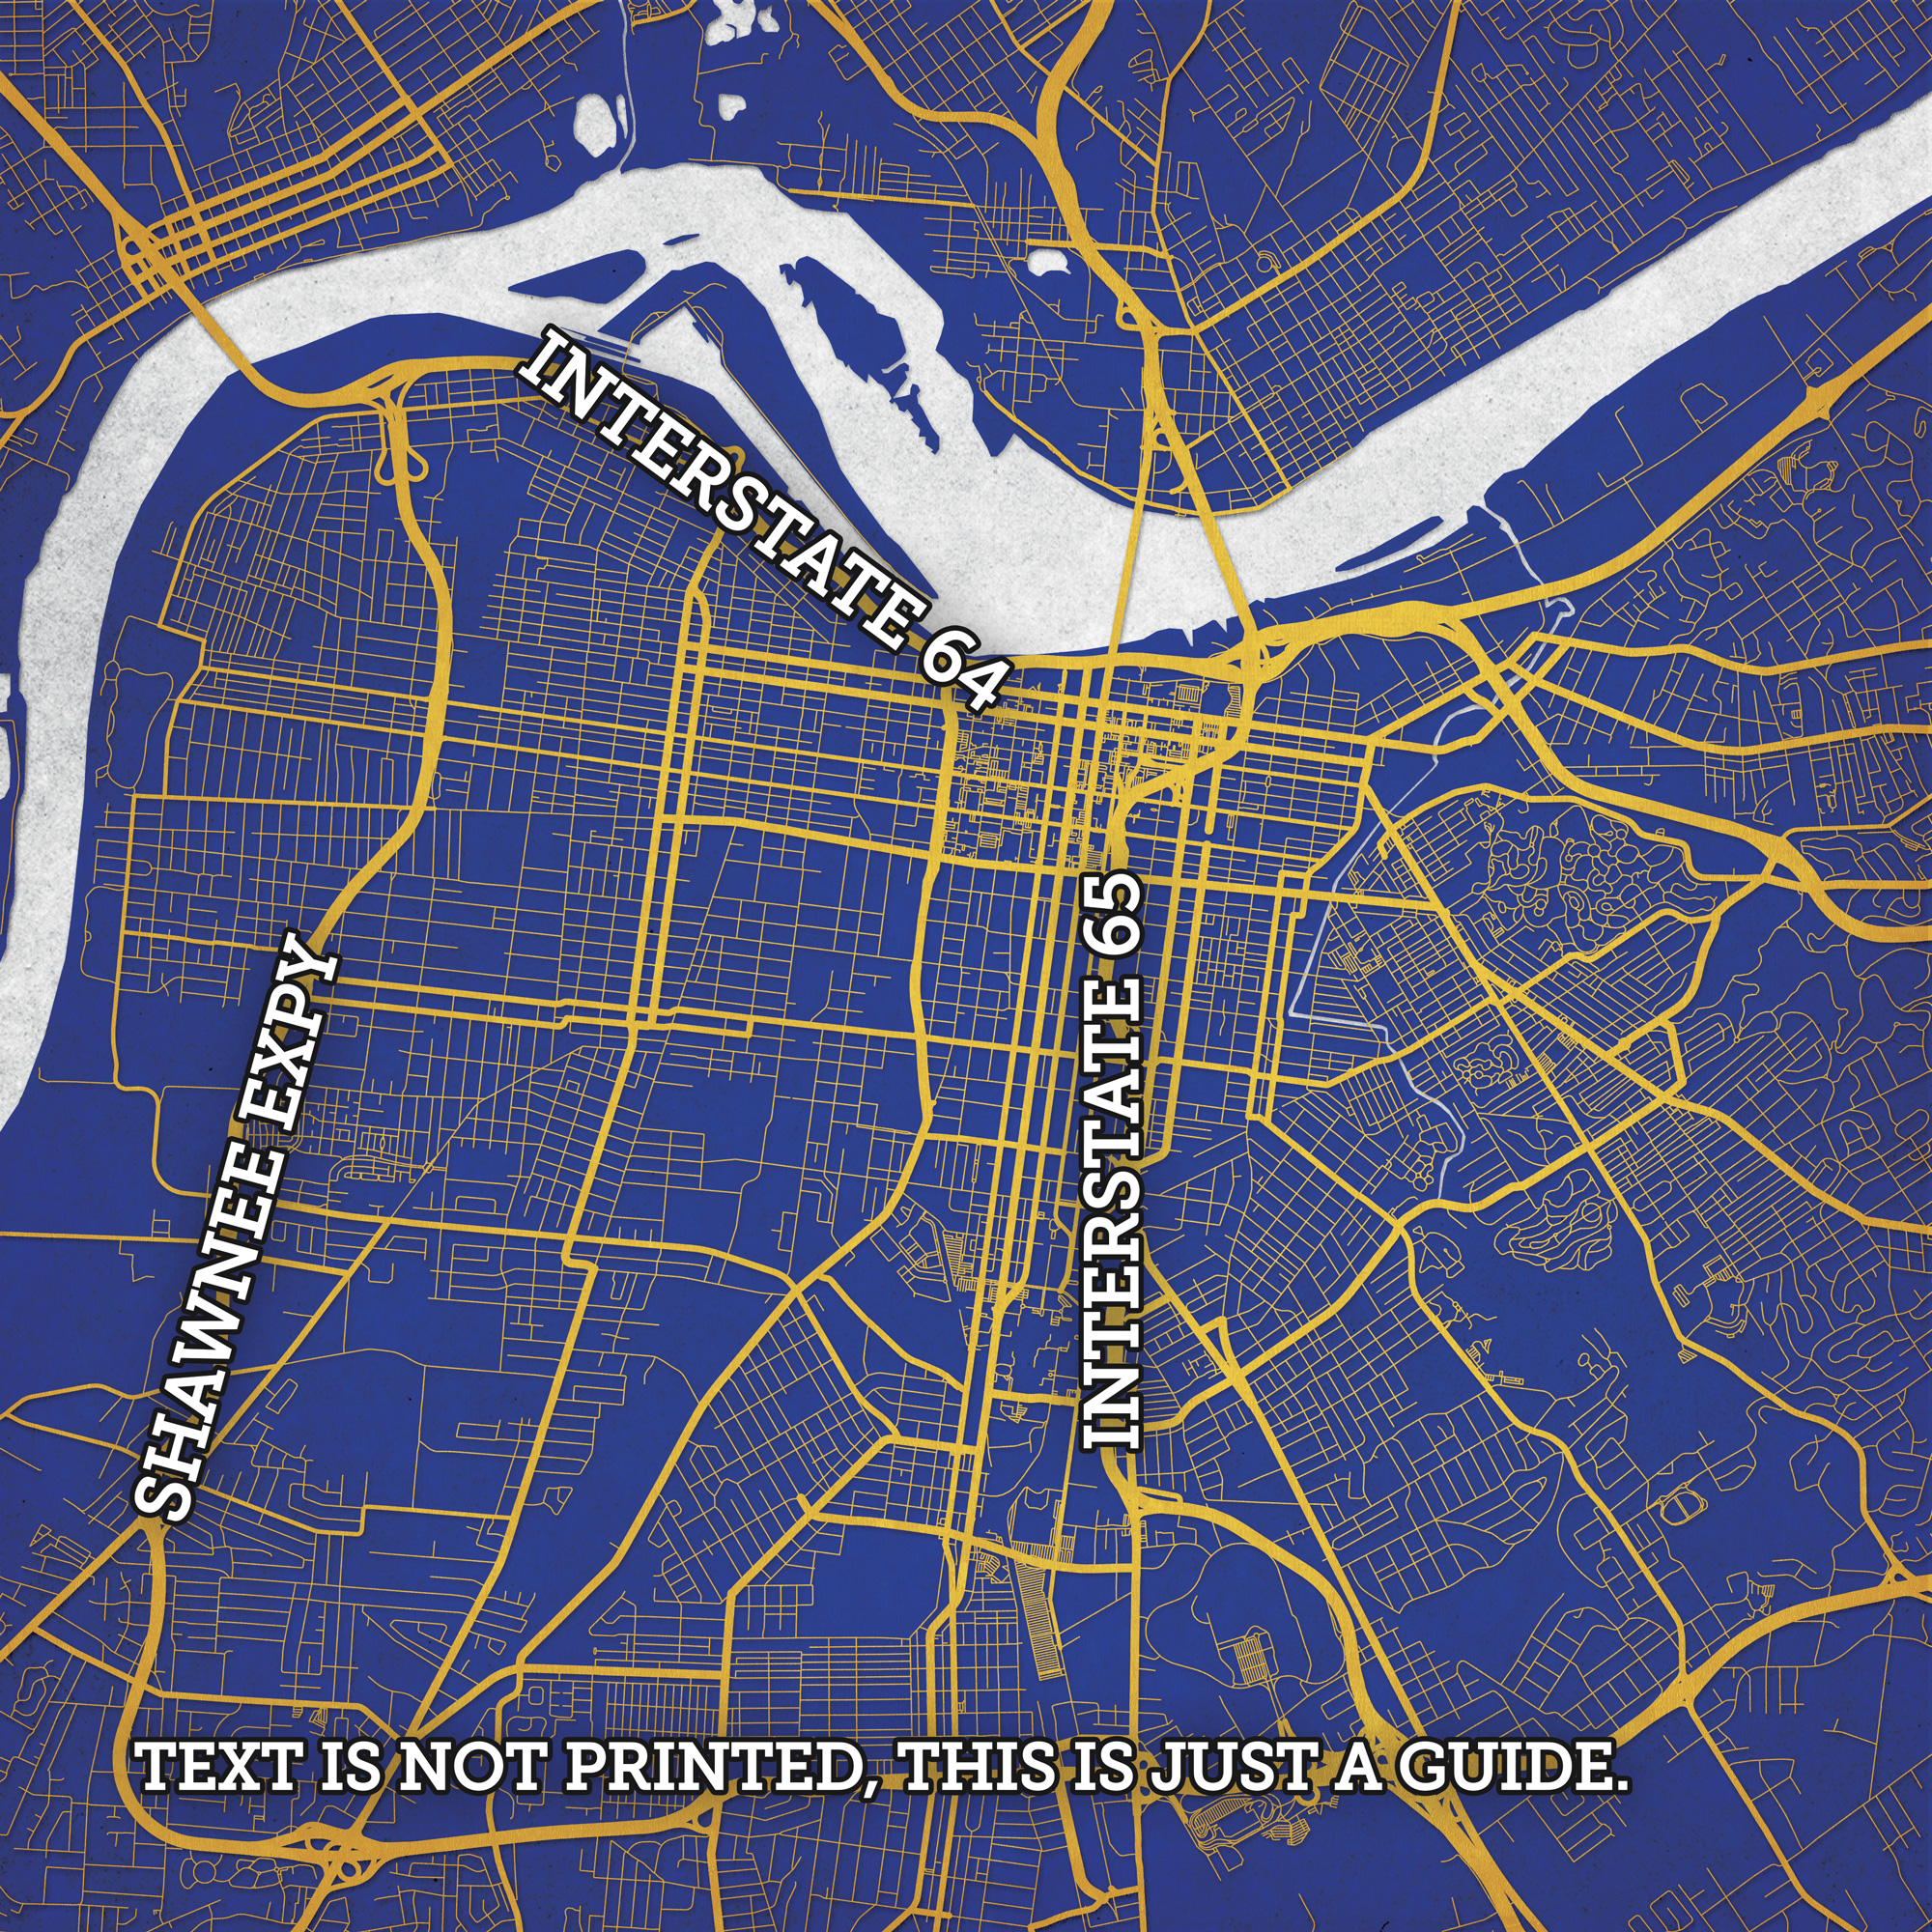 Louisville Kentucky City Map 4 Canvas Print / Canvas Art by Bekim